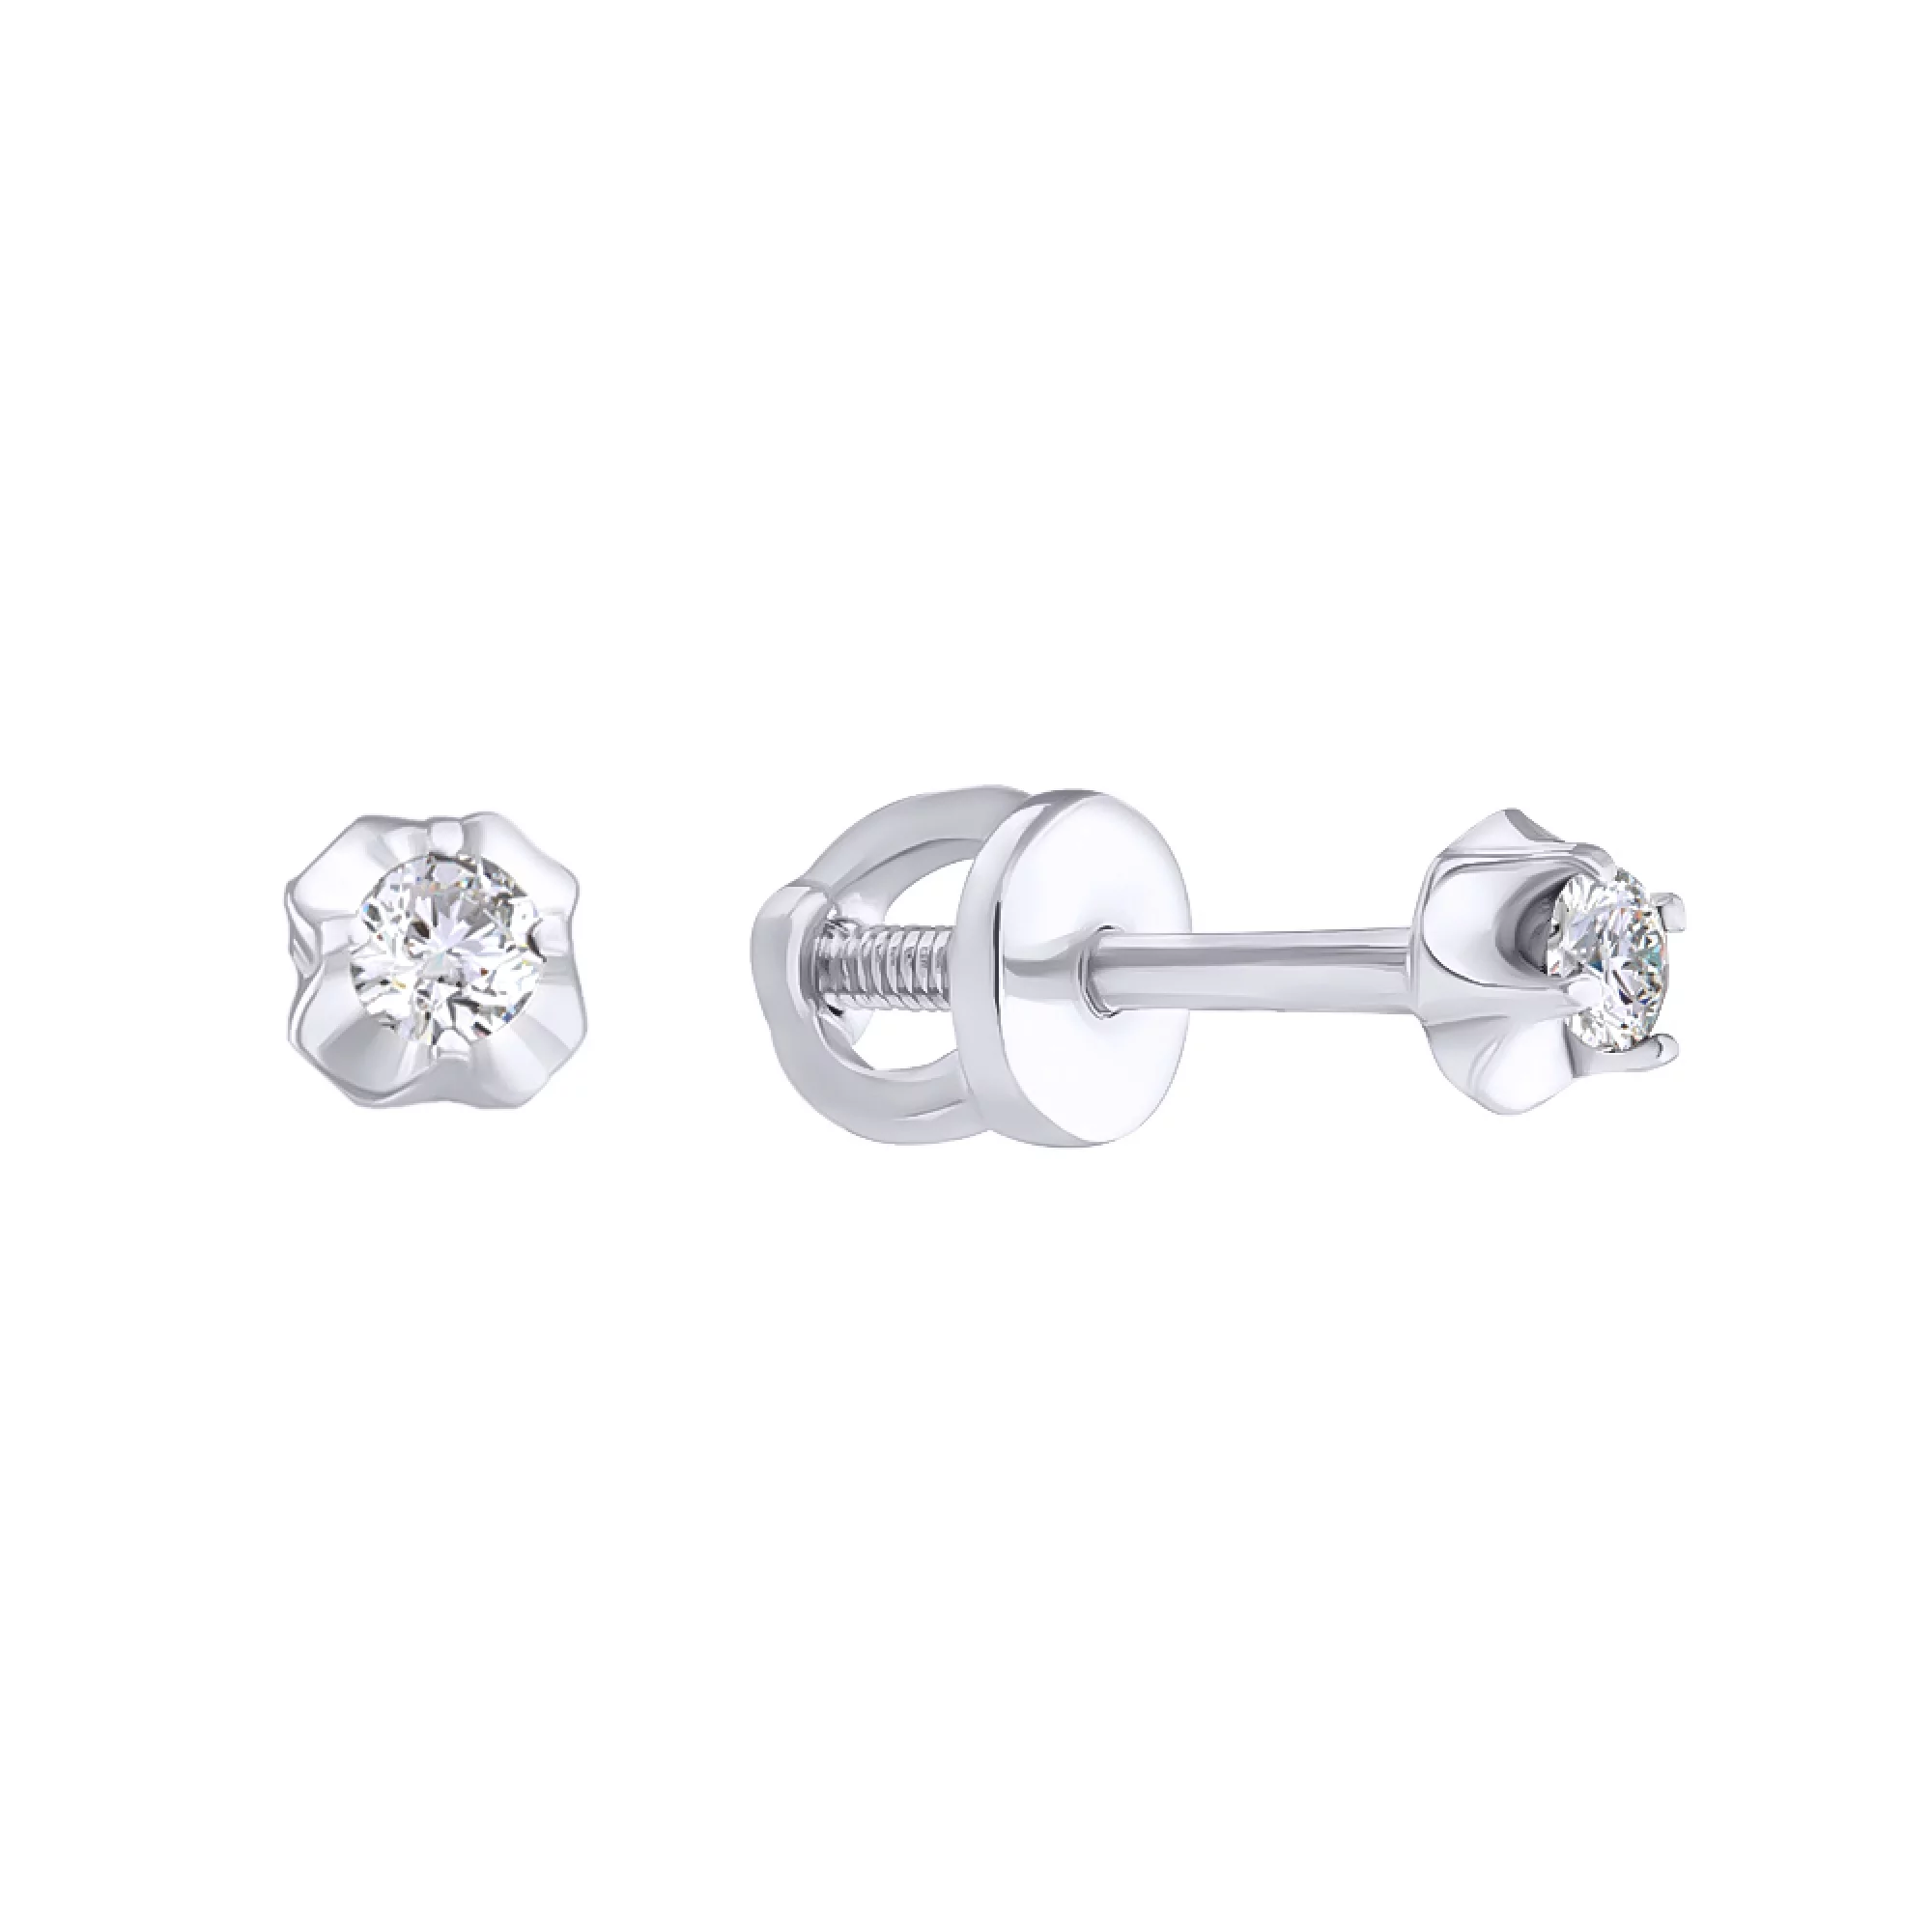 Срібні сережки-гвоздики з цирконієм - 594502 – зображення 1